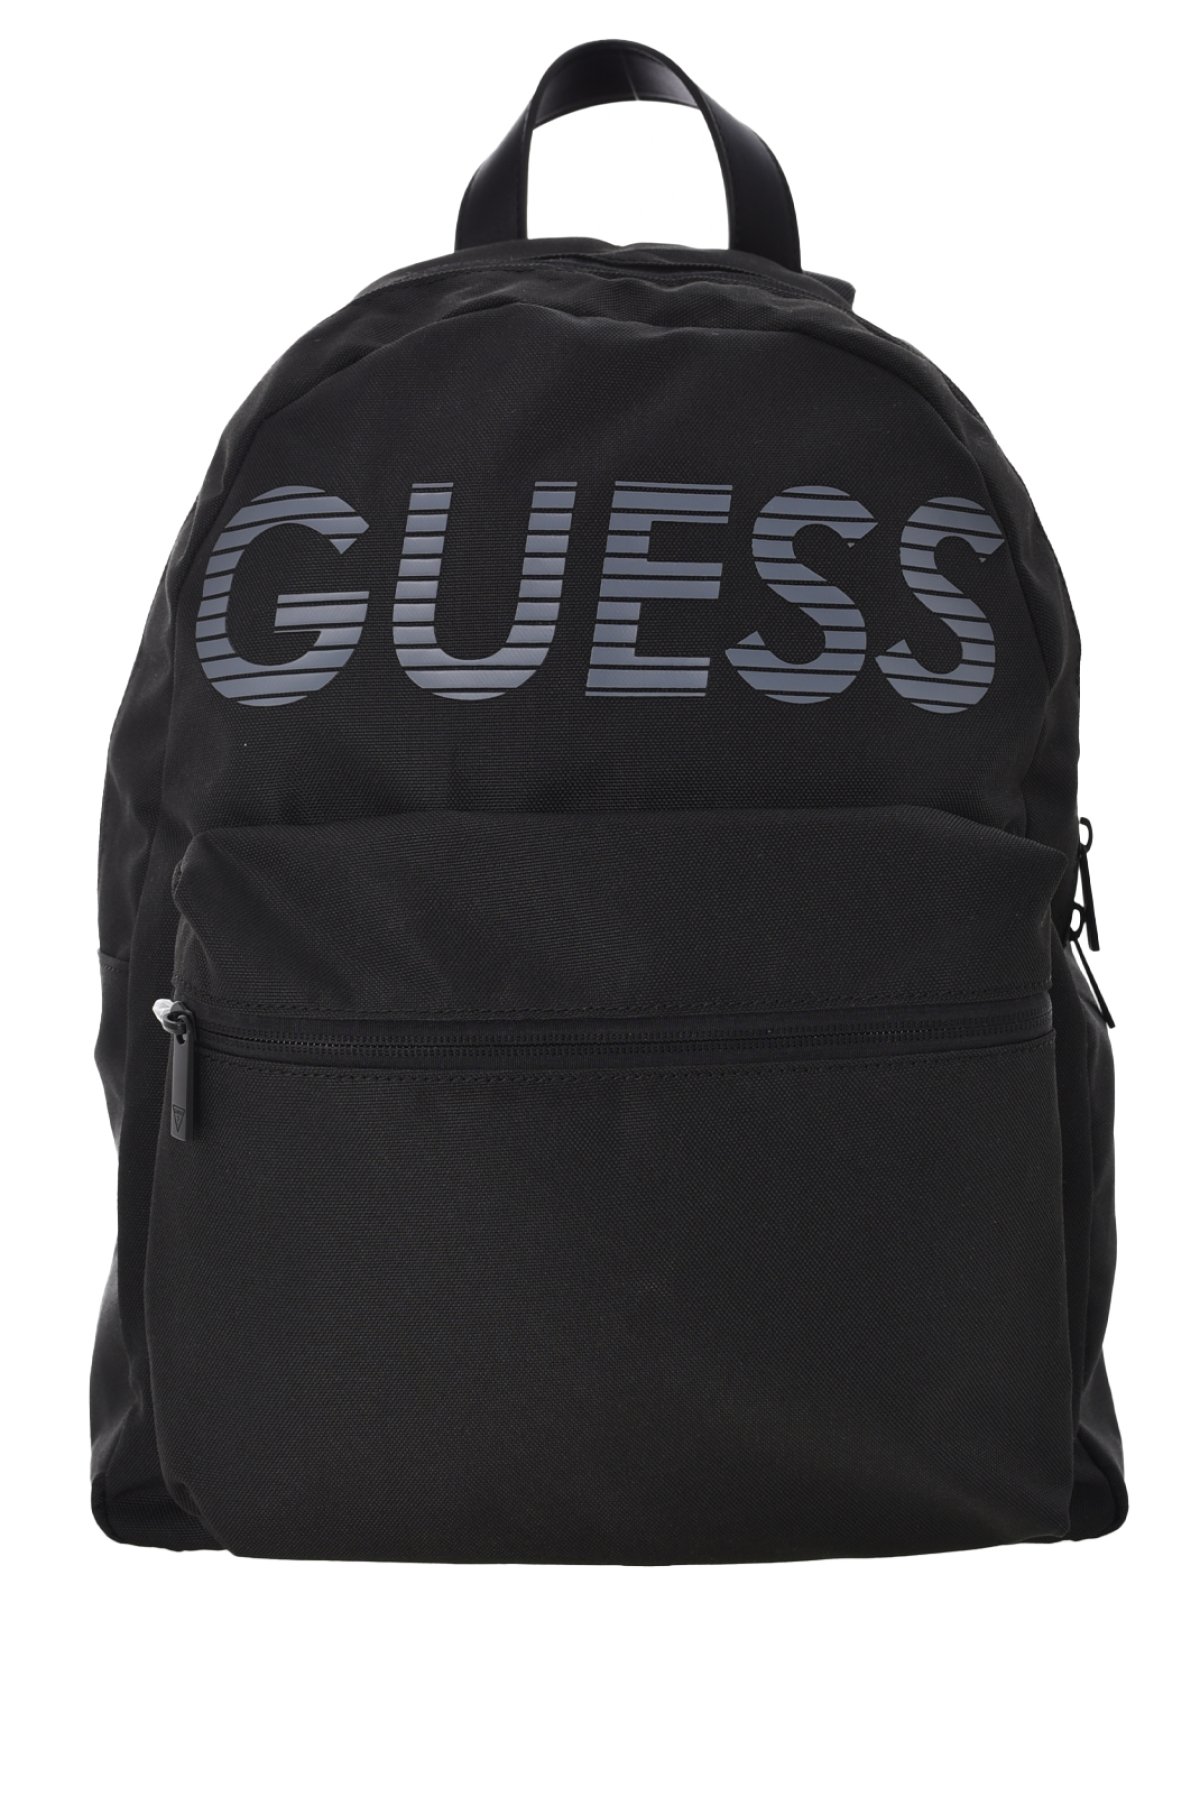 Guess HMJOHN P3206 Backpack černý 15l